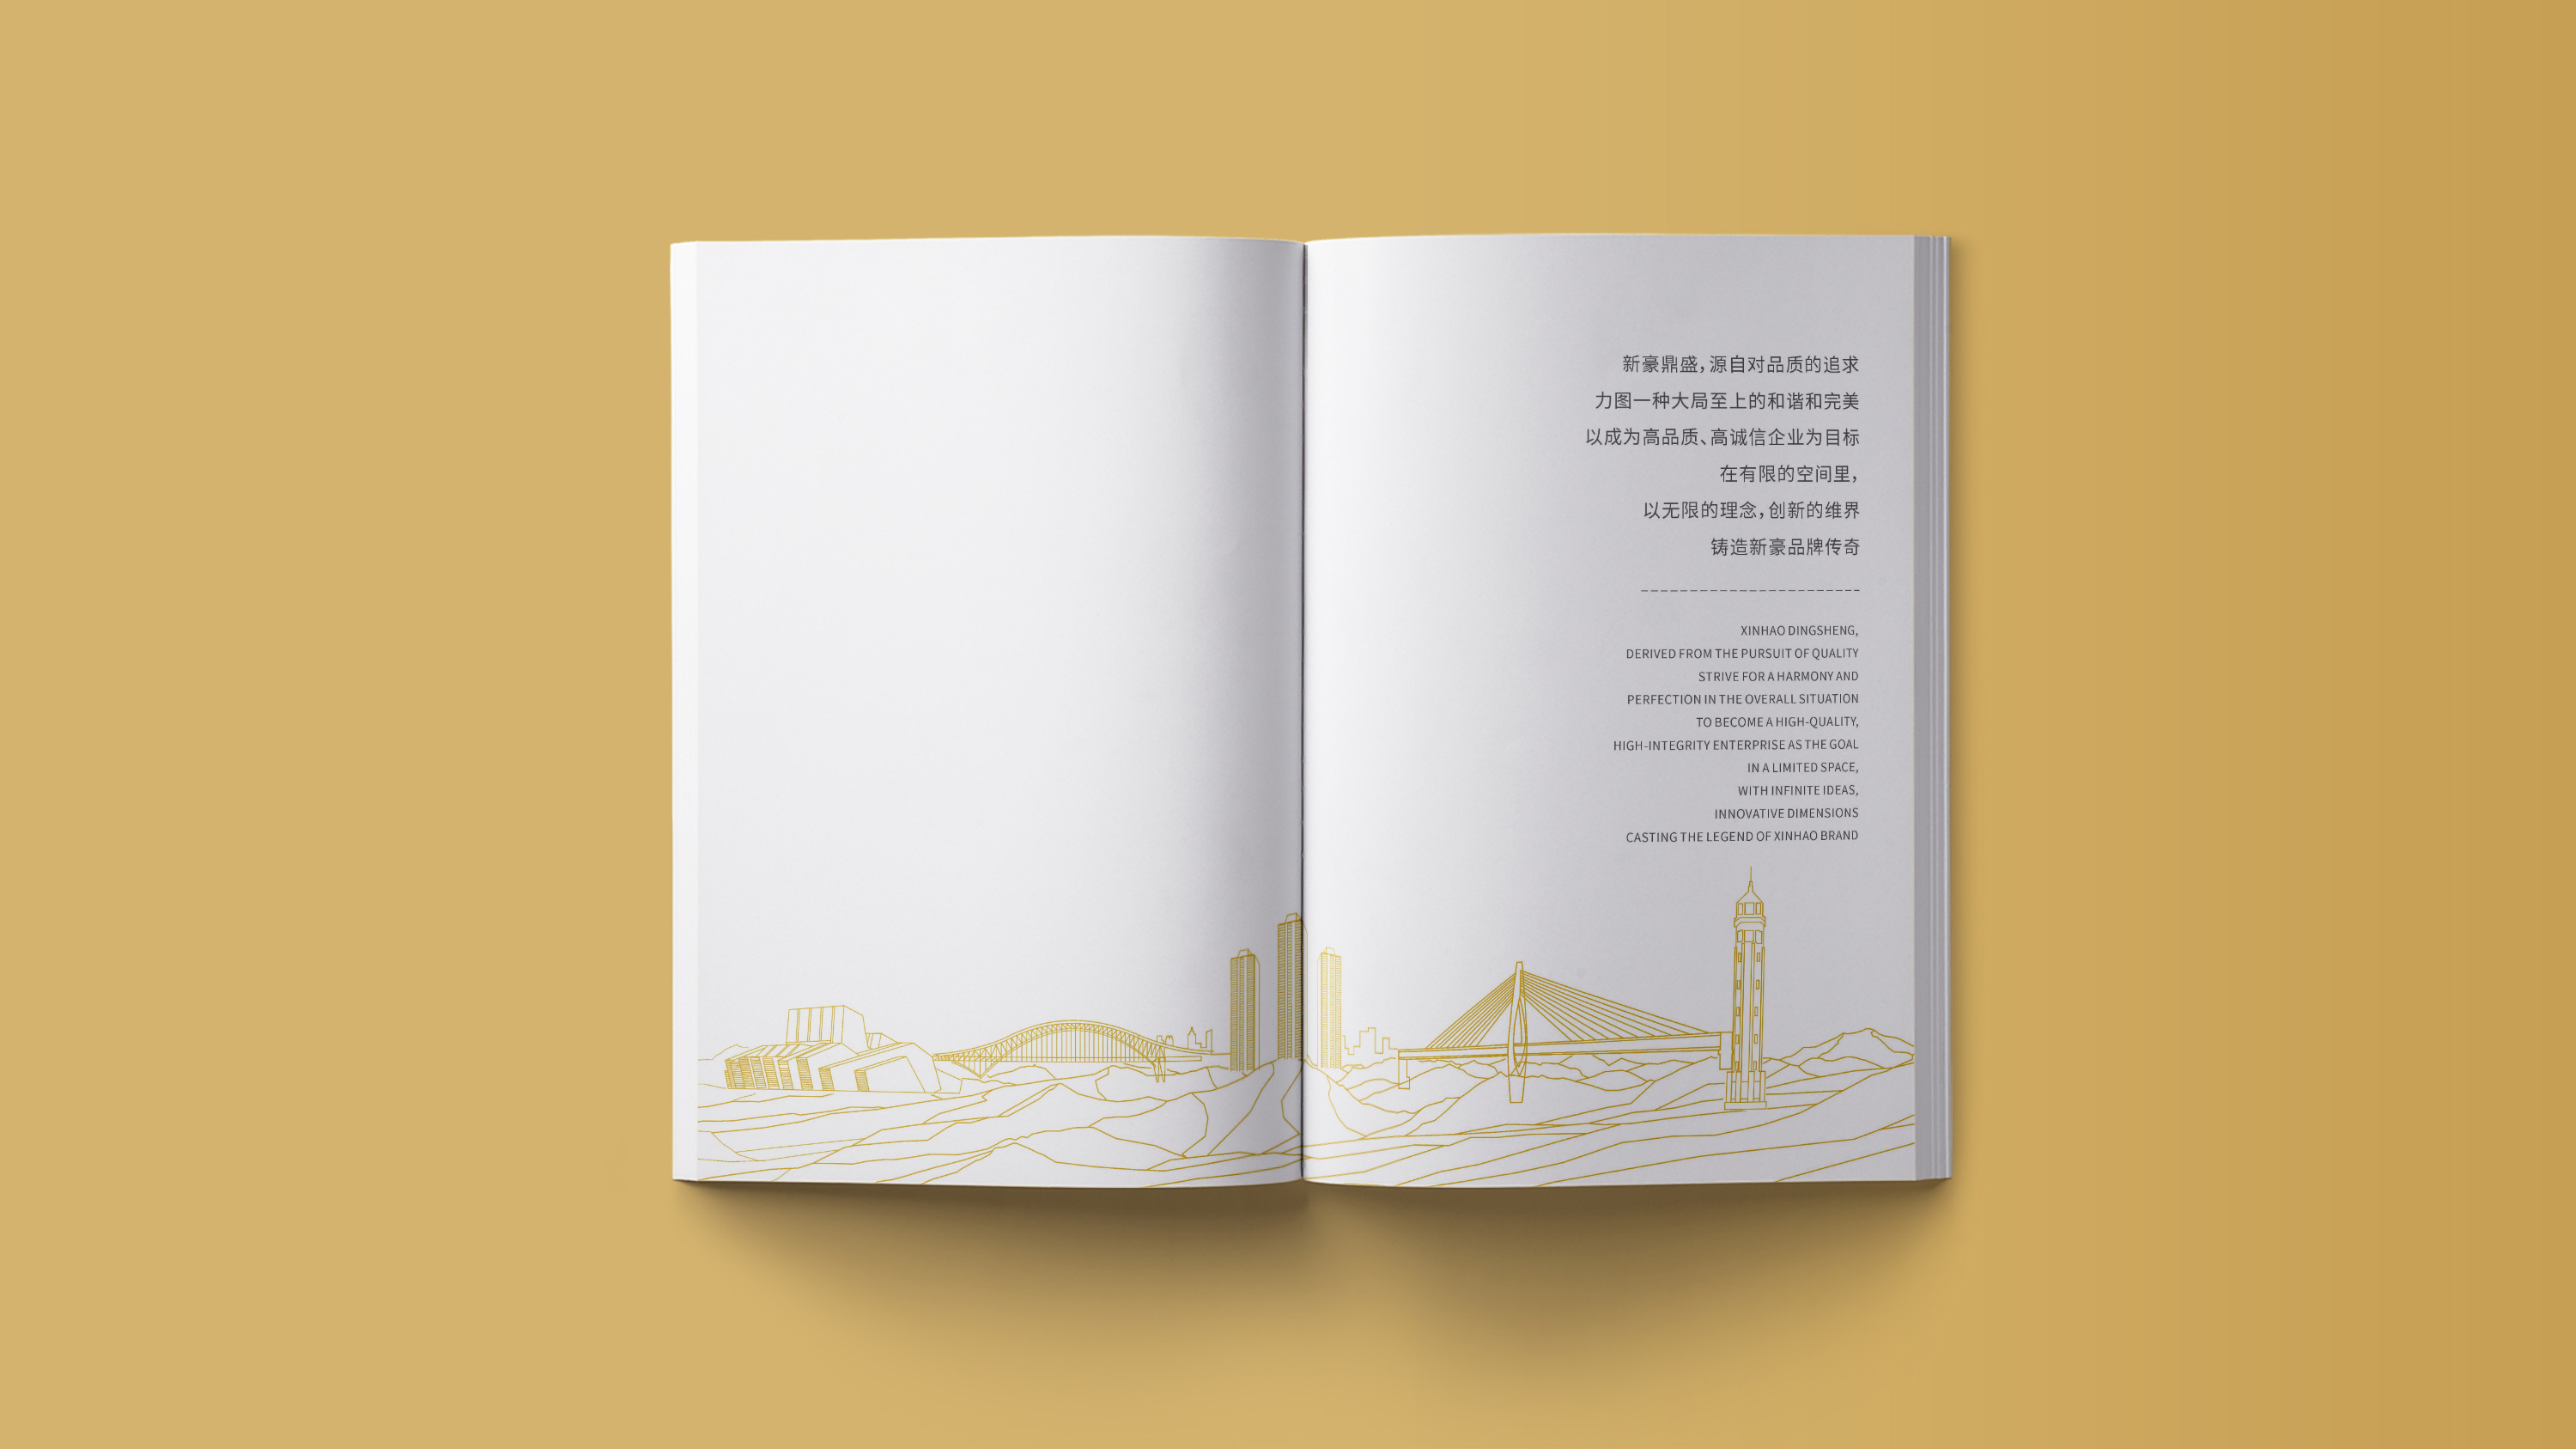 工程行业宣传画册设计 (2).jpg